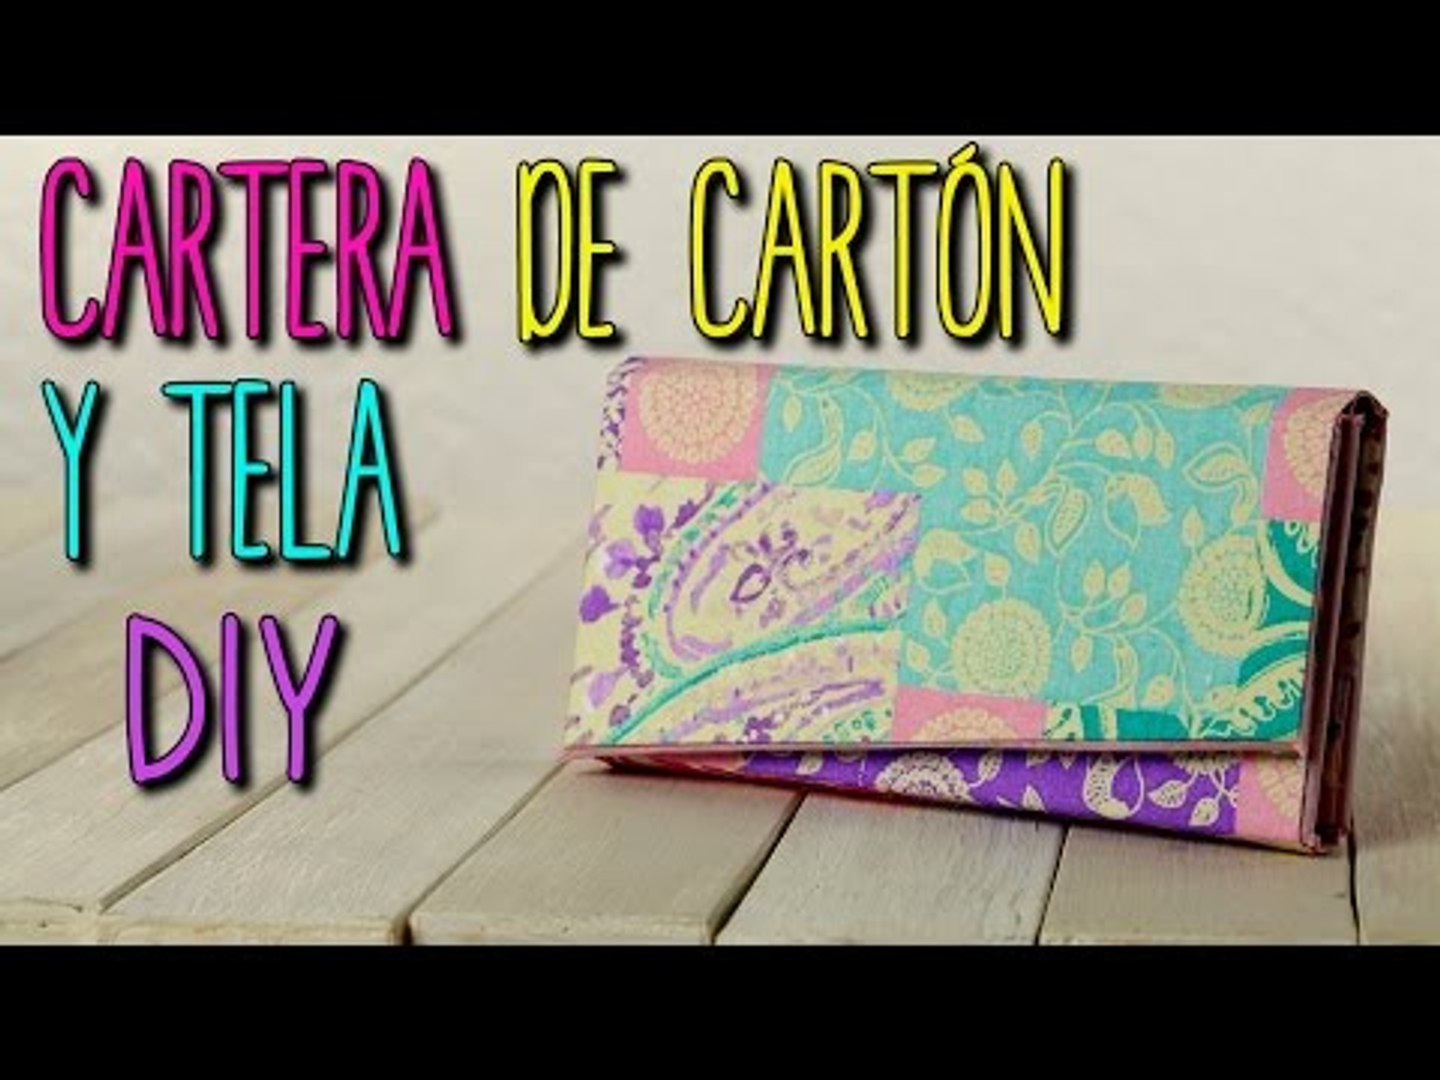 Cartera de Carton y Tela - Monedero Estilo Vintage - DIY Cartonaje -  Catwalk - Vídeo Dailymotion